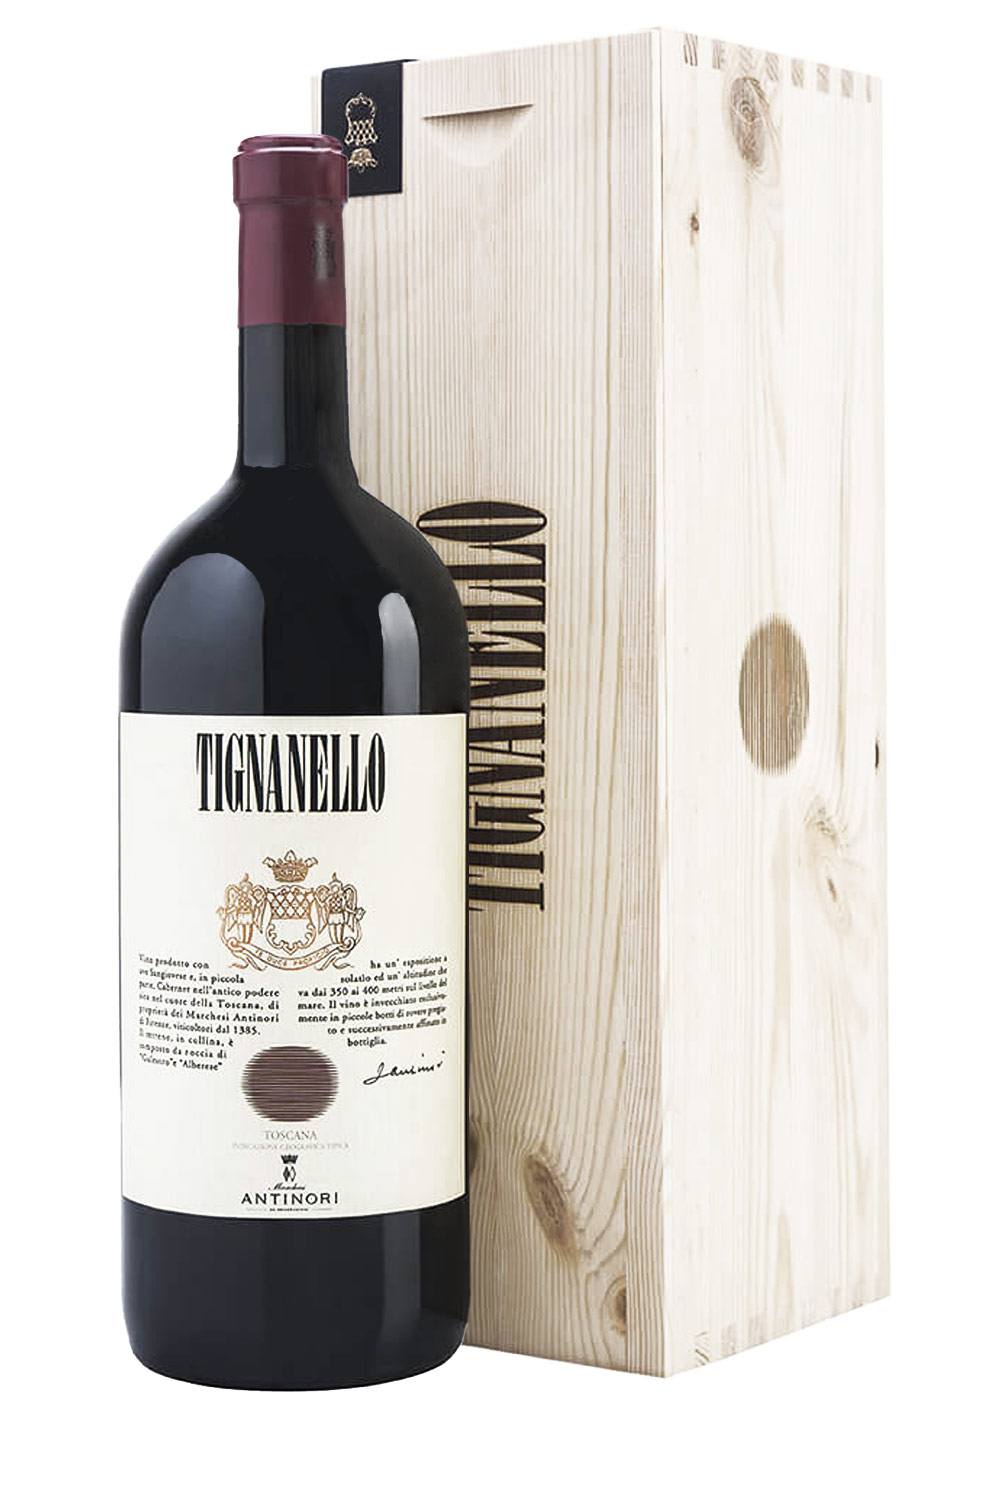 Senti Magnum aus IGT Toscana Tignanello kaufen Vini Italien bei Antinori 2019 Marchesi | - Online Weine